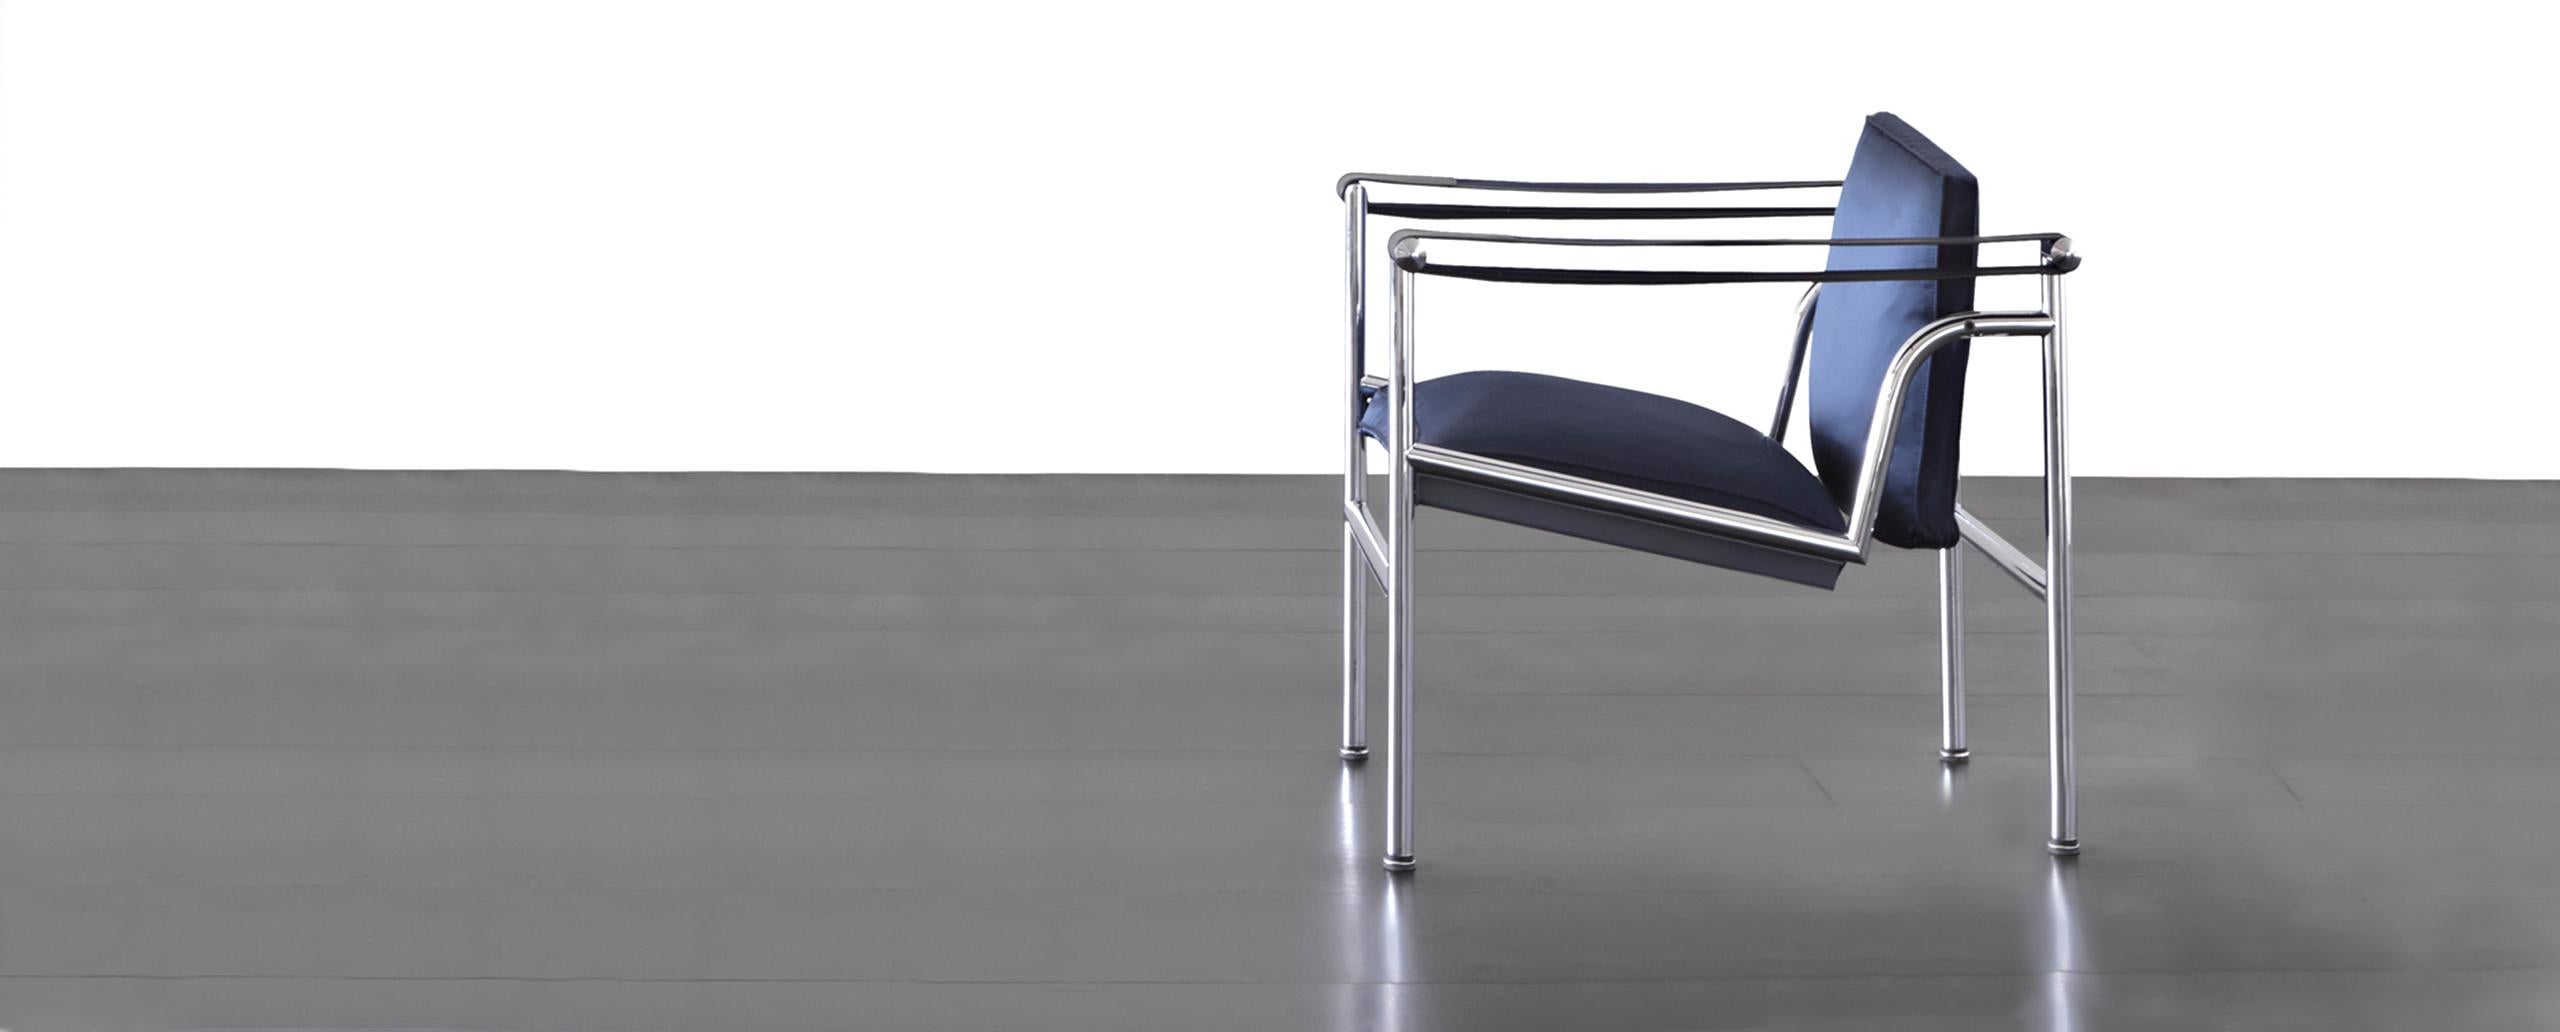 Chaise conçue par Le Corbusier, Pierre Jeanneret, Charlotte Perriand en 1928. Relancé en 2012.
Fabriqué par Cassina en Italie.

Fauteuil avec structure en acier chromé trivalent poli (CR3). Assise et dossier rembourrés en polyuréthane. Les